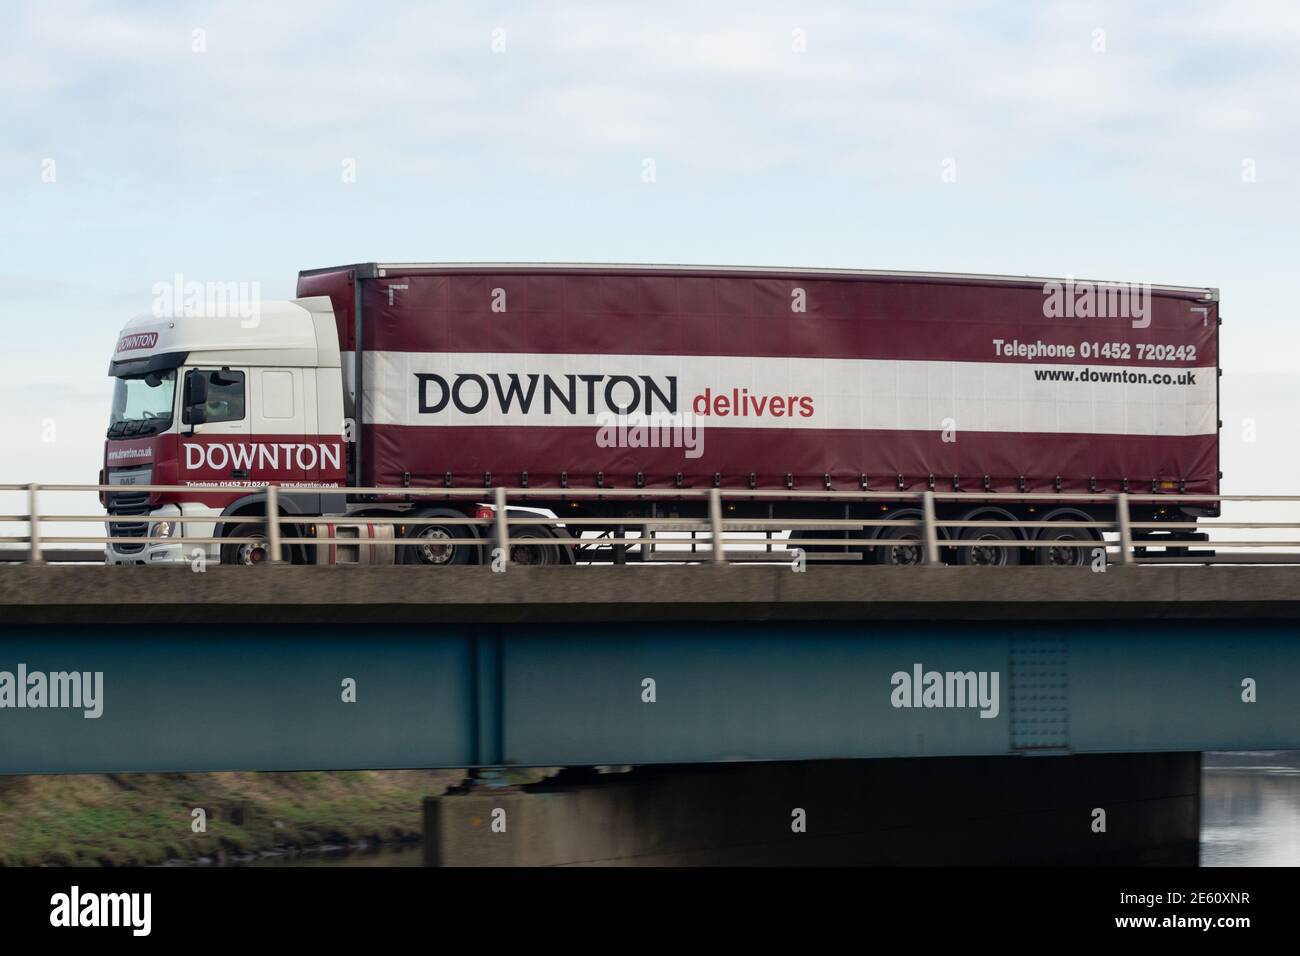 Downton haulage contractor lorry - Scotland, UK Stock Photo